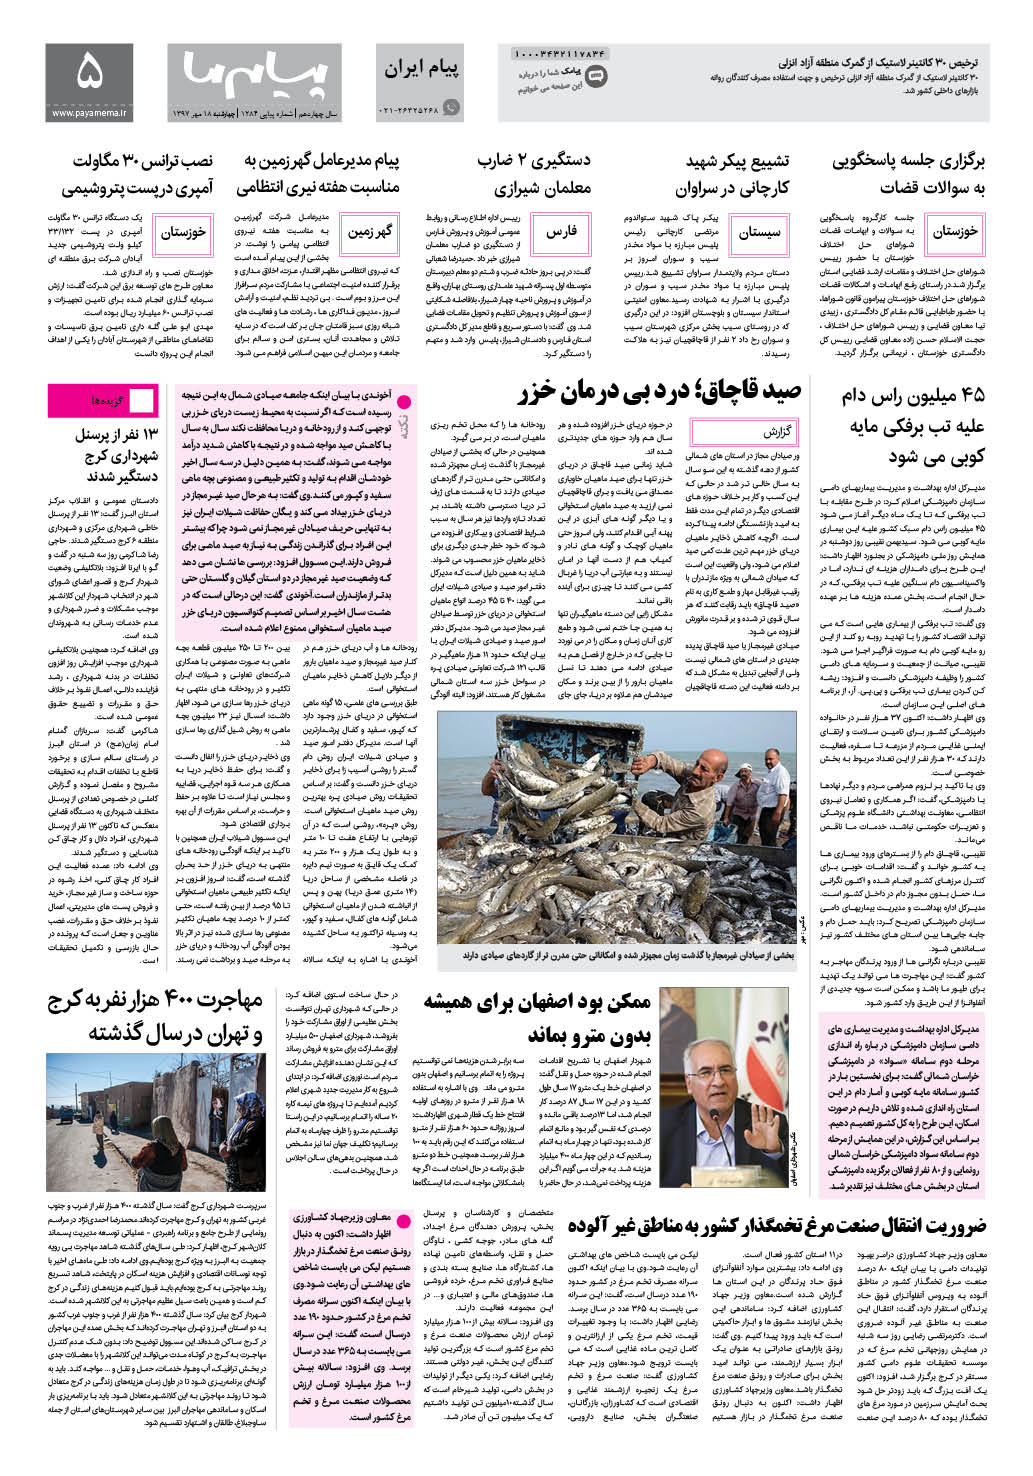 صفحه پیام ایران شماره 1284 روزنامه پیام ما